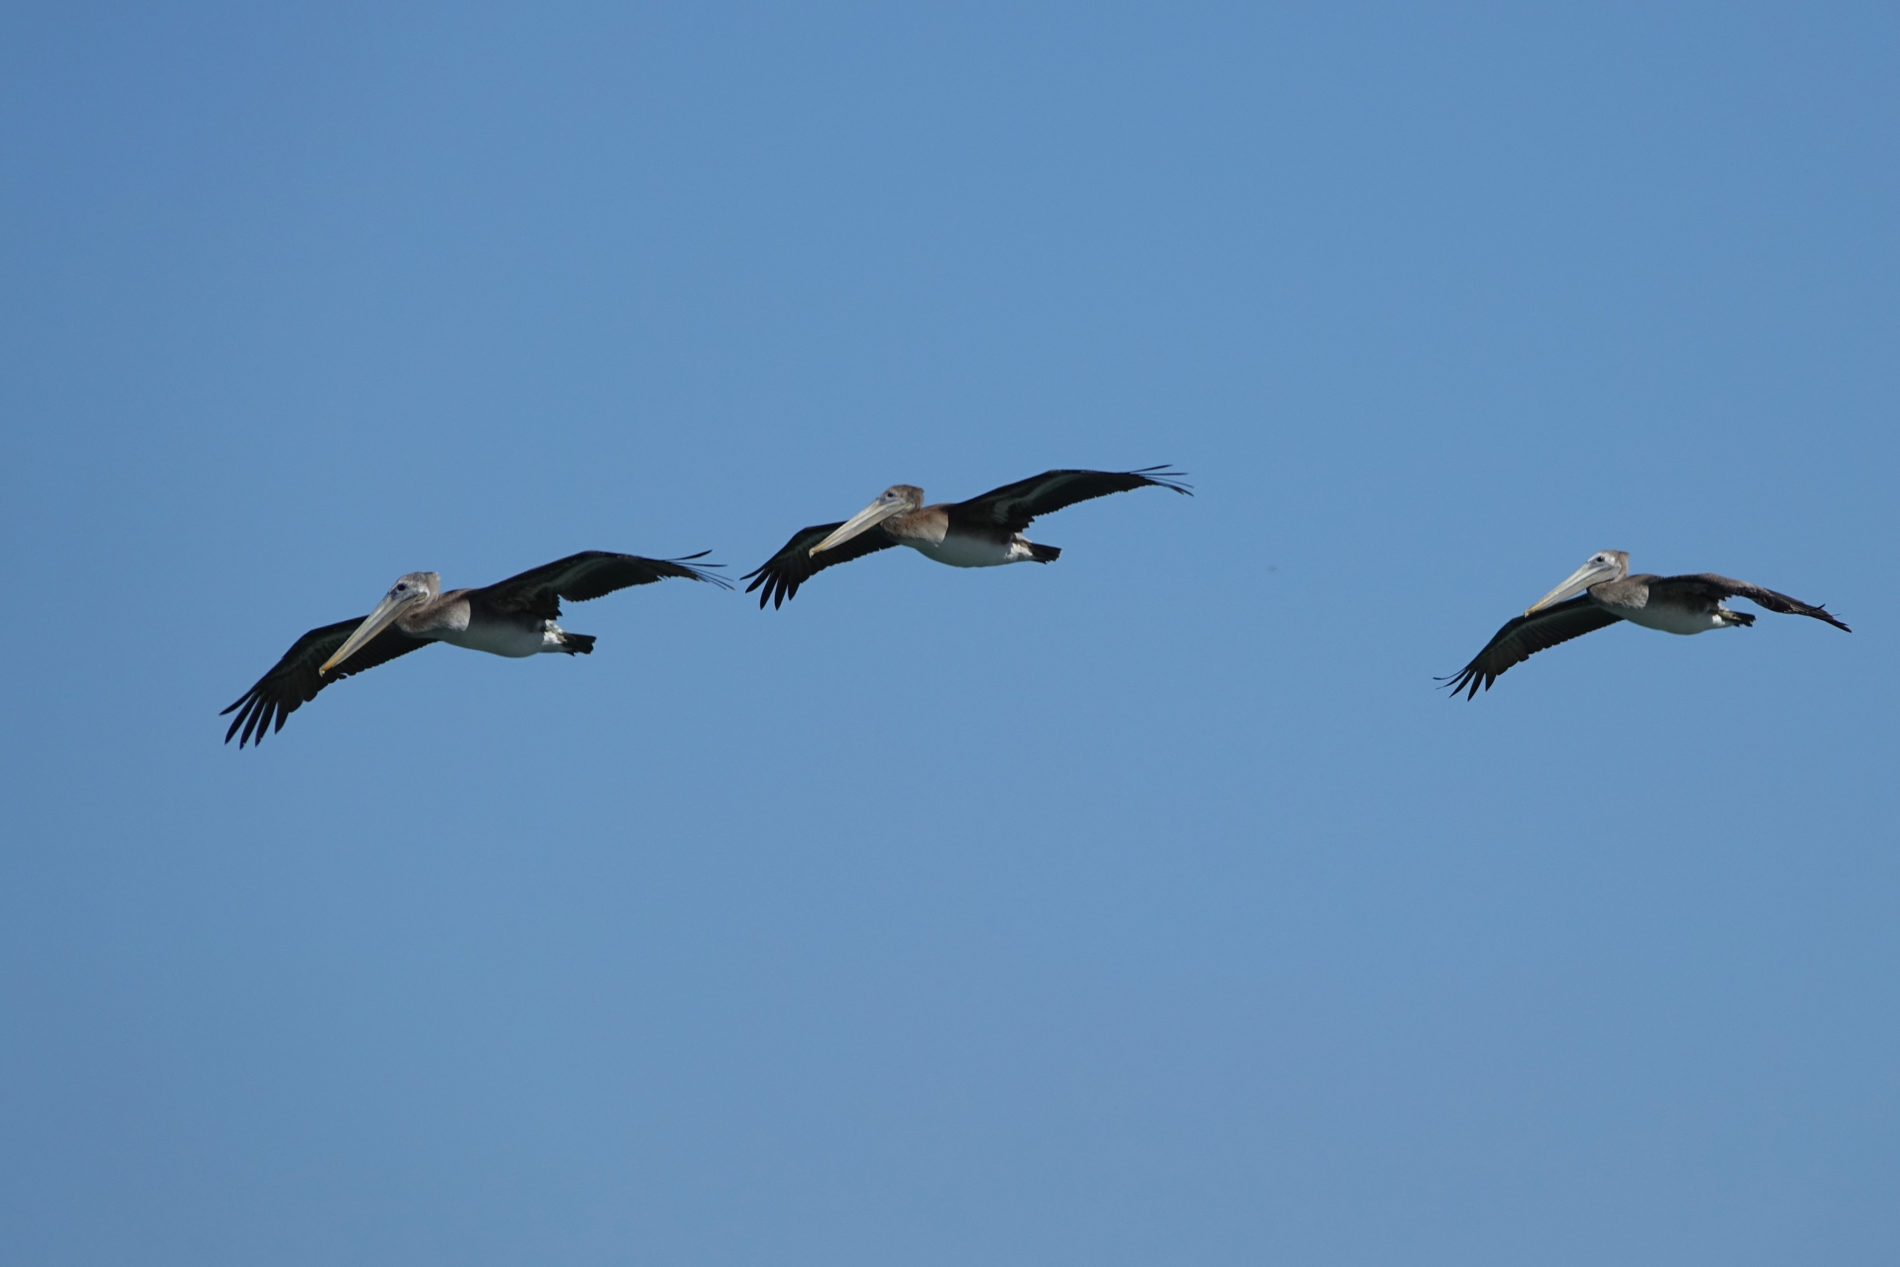 Pelicans flying near Alcatraz. It’s a common sight on San Francisco Bay.